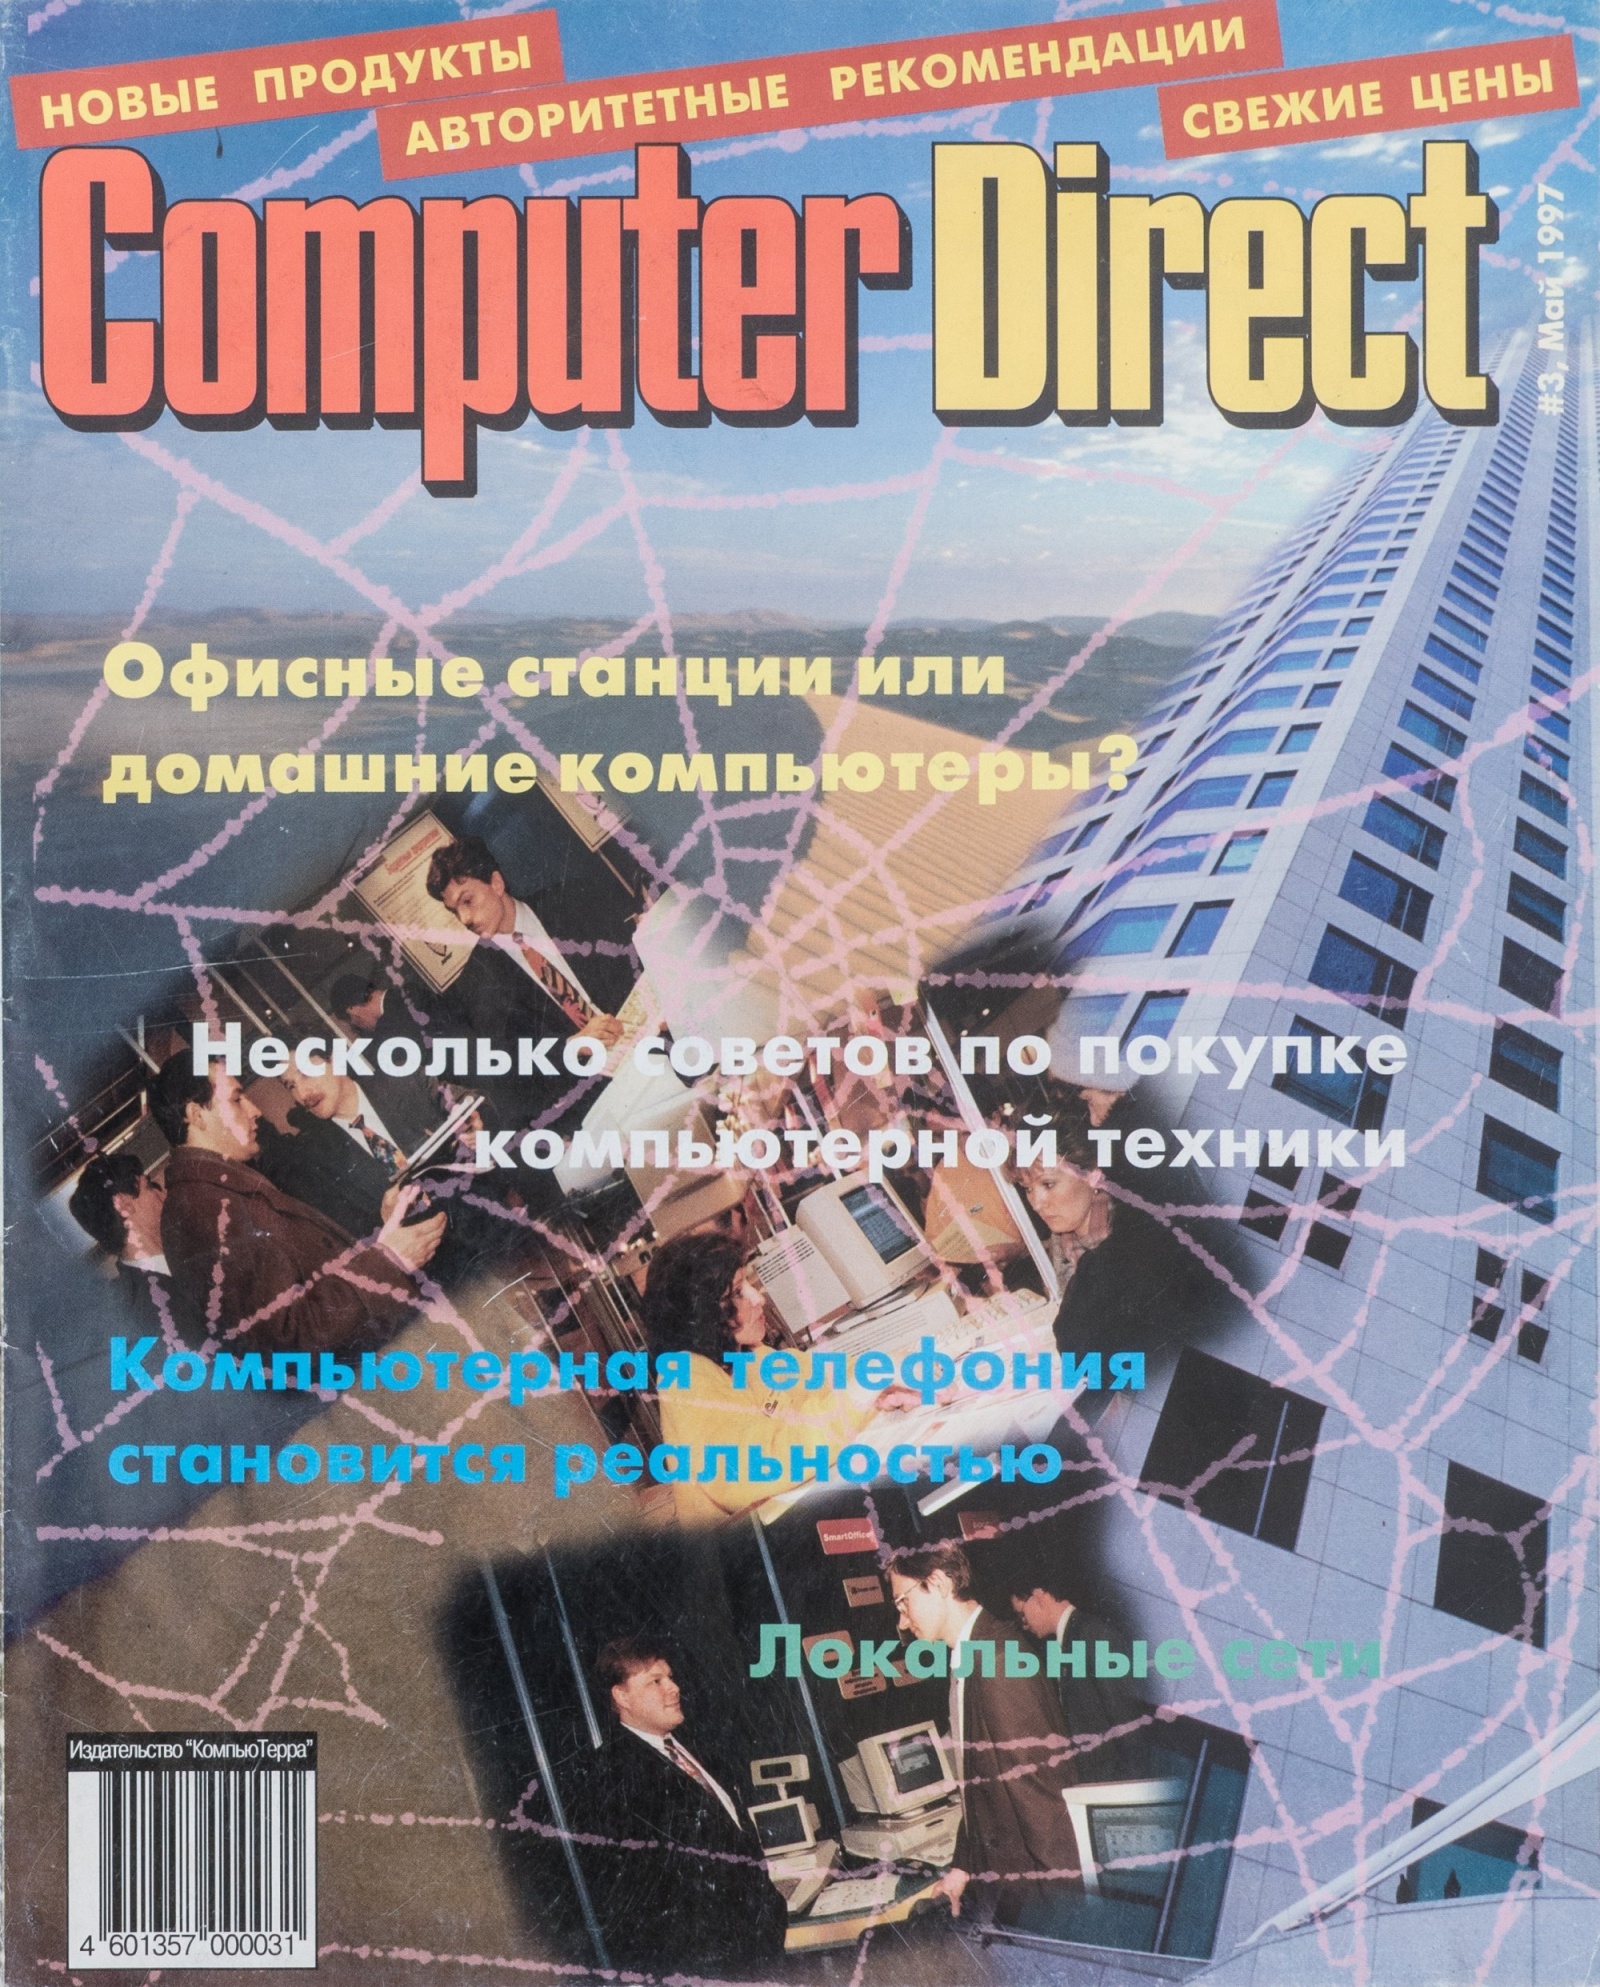 Древности: компьютерная реклама 1997 года - 19